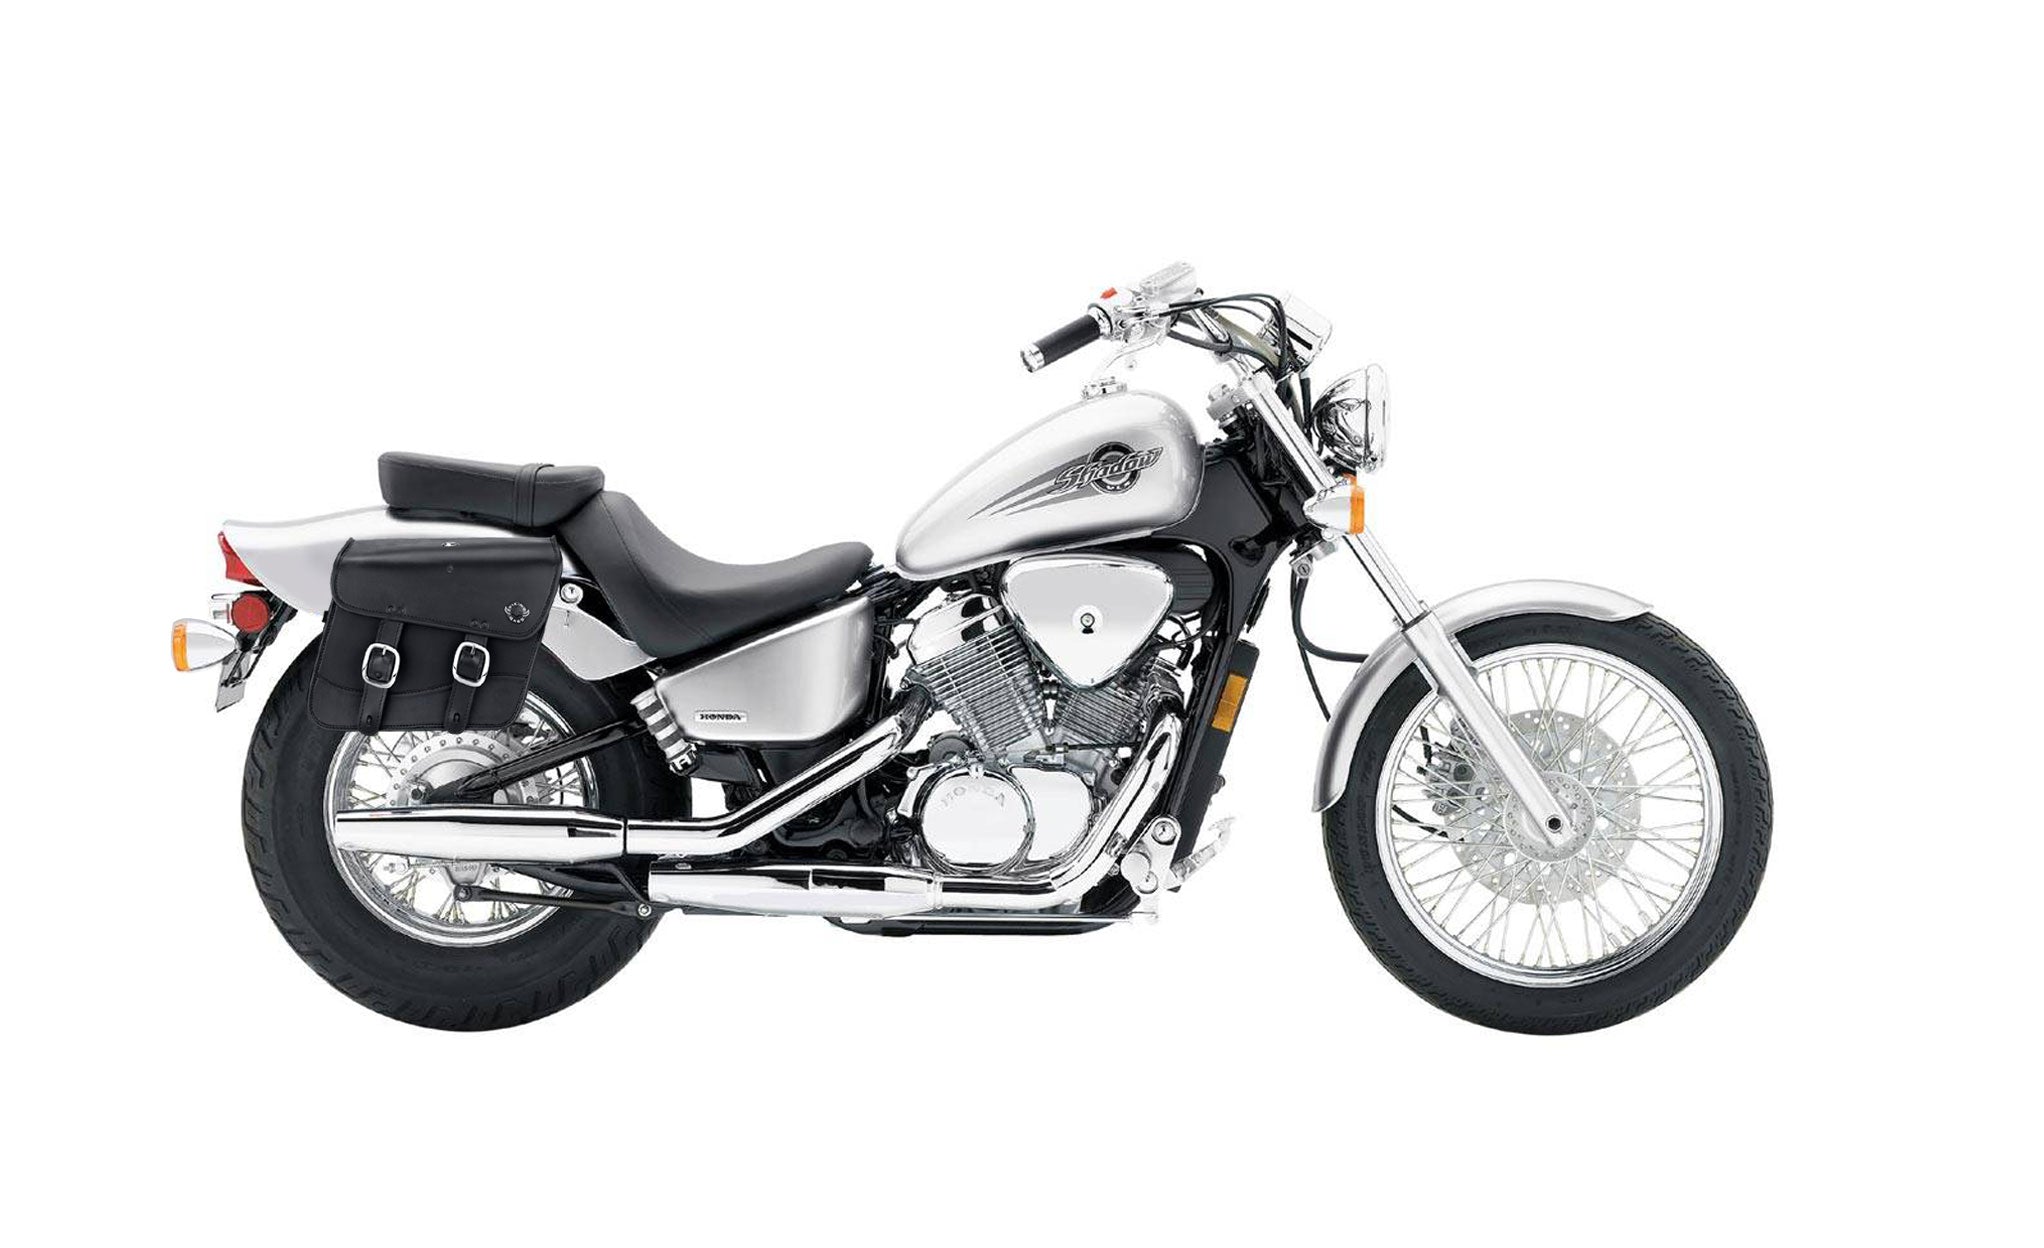 Viking Thor Medium Honda Shadow 600 Vlx Leather Motorcycle Saddlebags on Bike Photo @expand